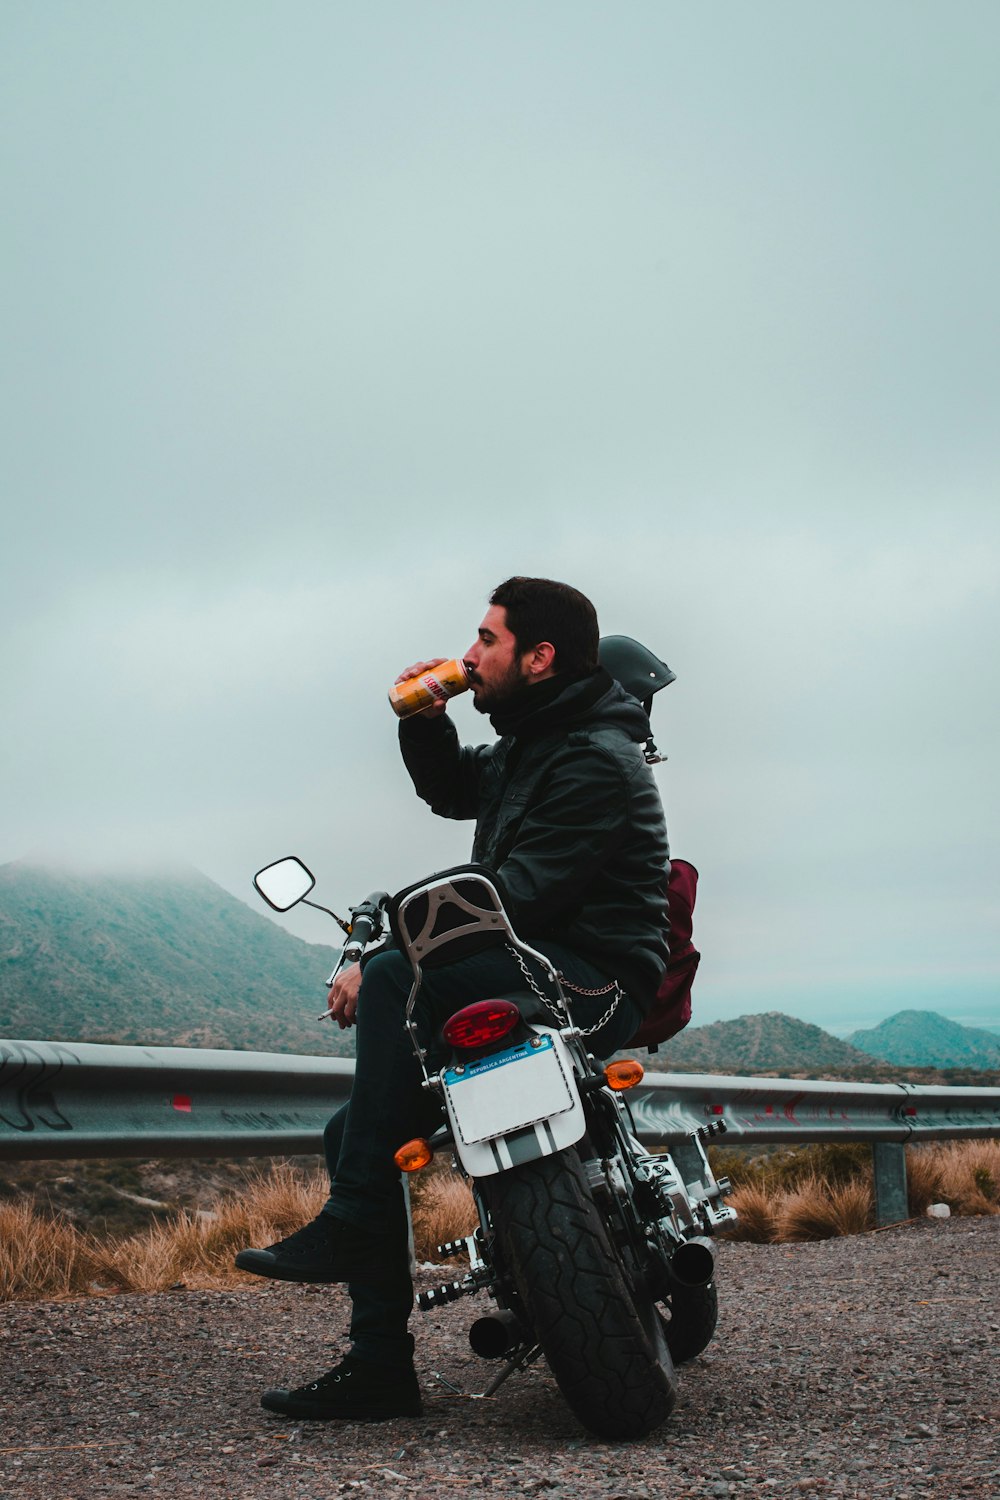 Uomo che si siede sulla motocicletta mentre beve bevanda in lattina che domina la montagna sotto cieli nuvolosi scuri durante il giorno